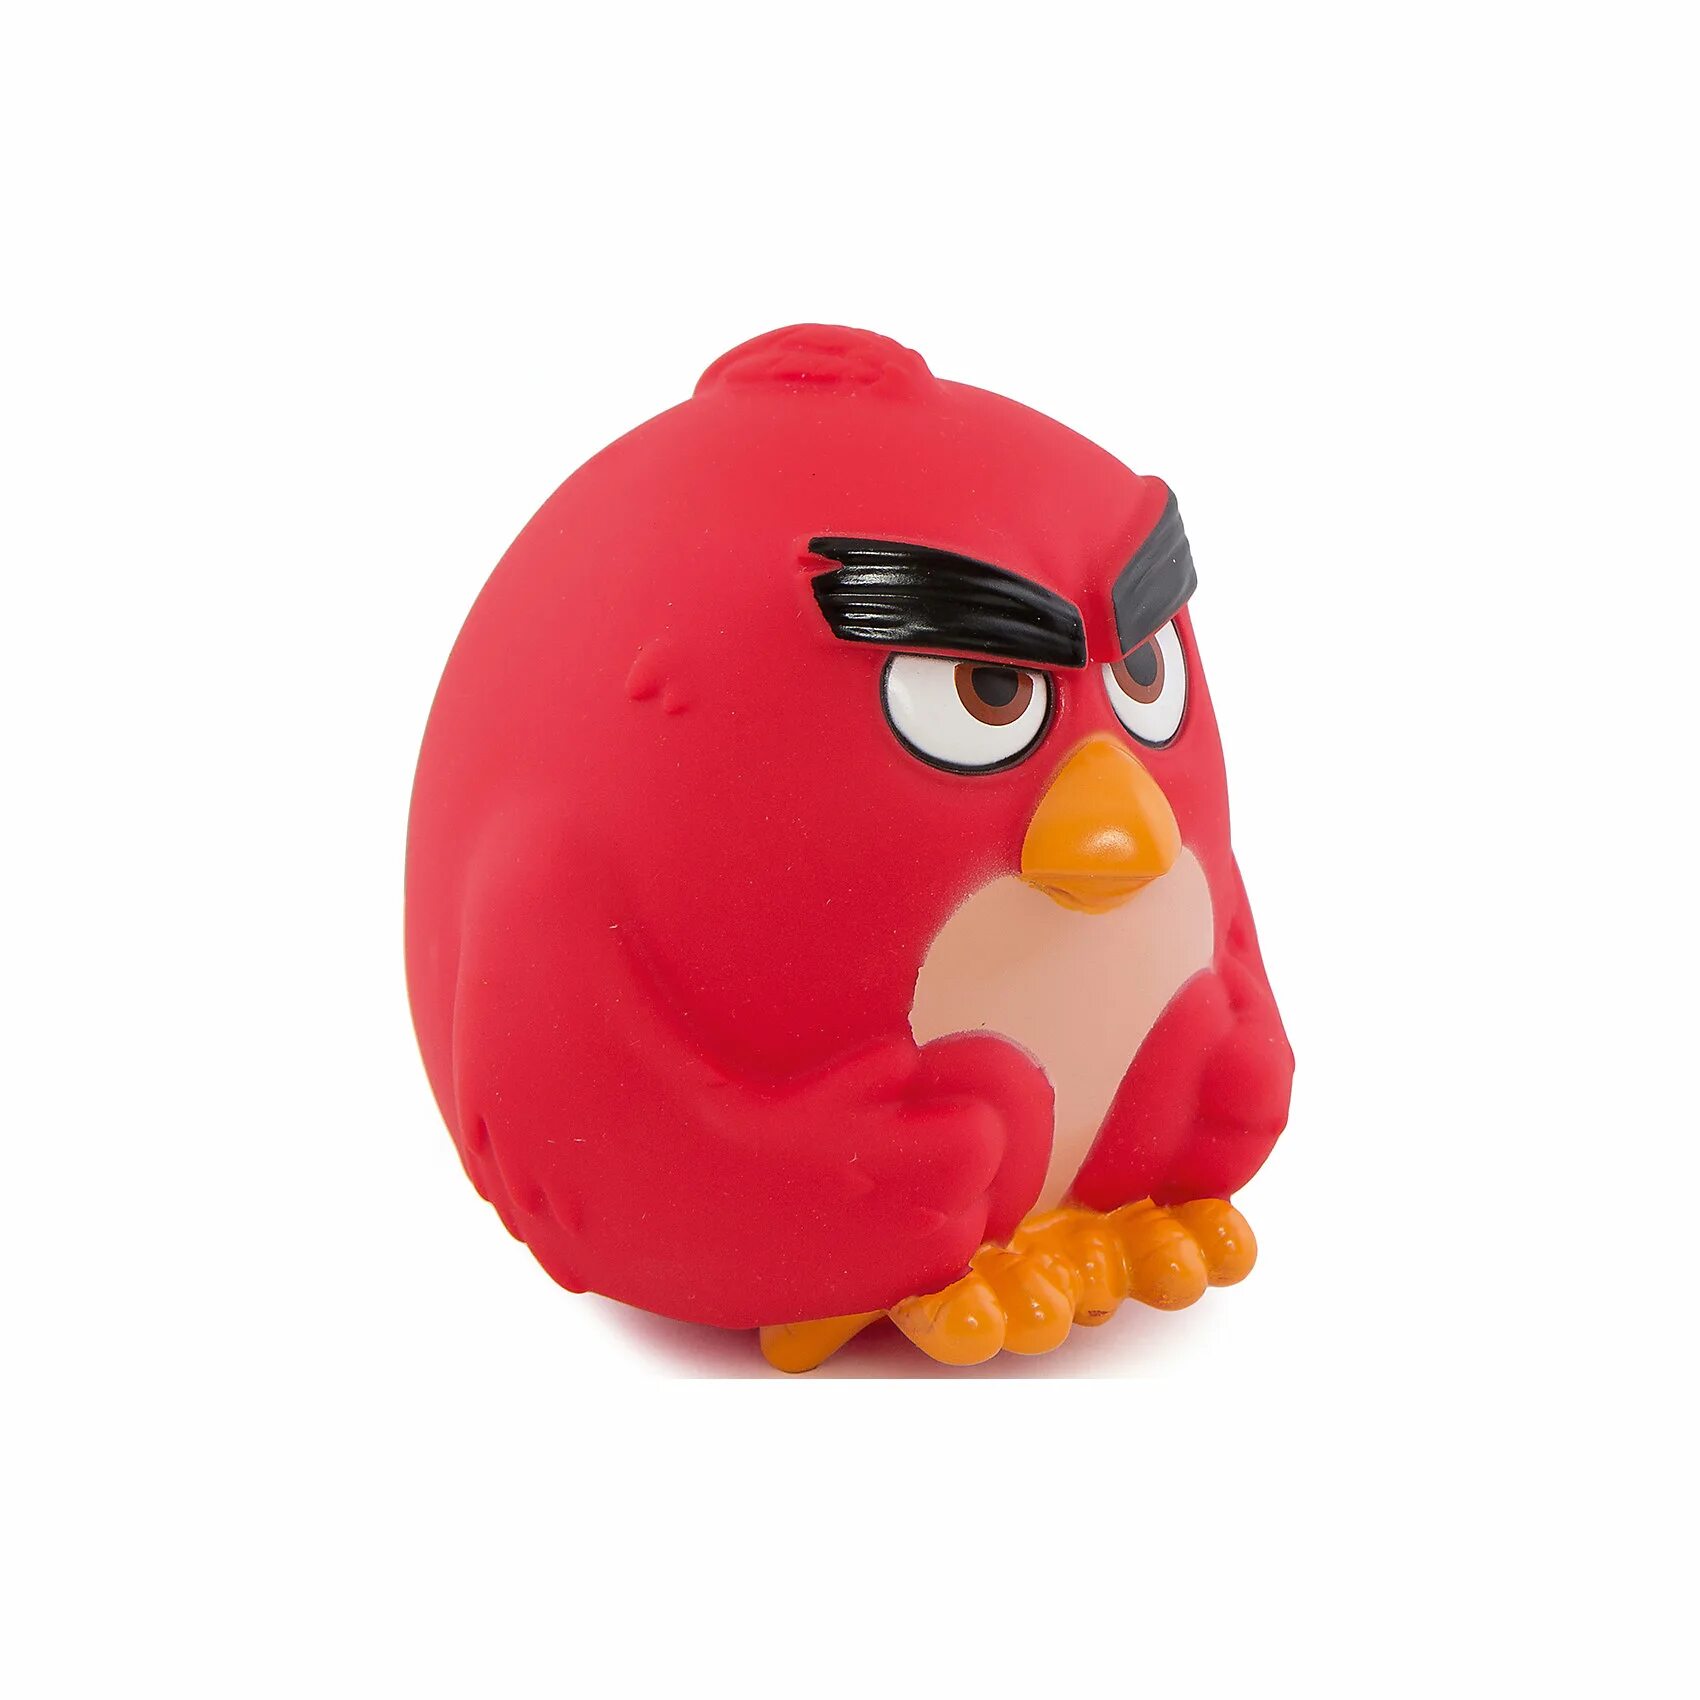 Шарики птички. Red Angry Birds шар. Птица шарик. Пуфик ред реда из Энгри Бердс который. Шарики птичка Теренс.